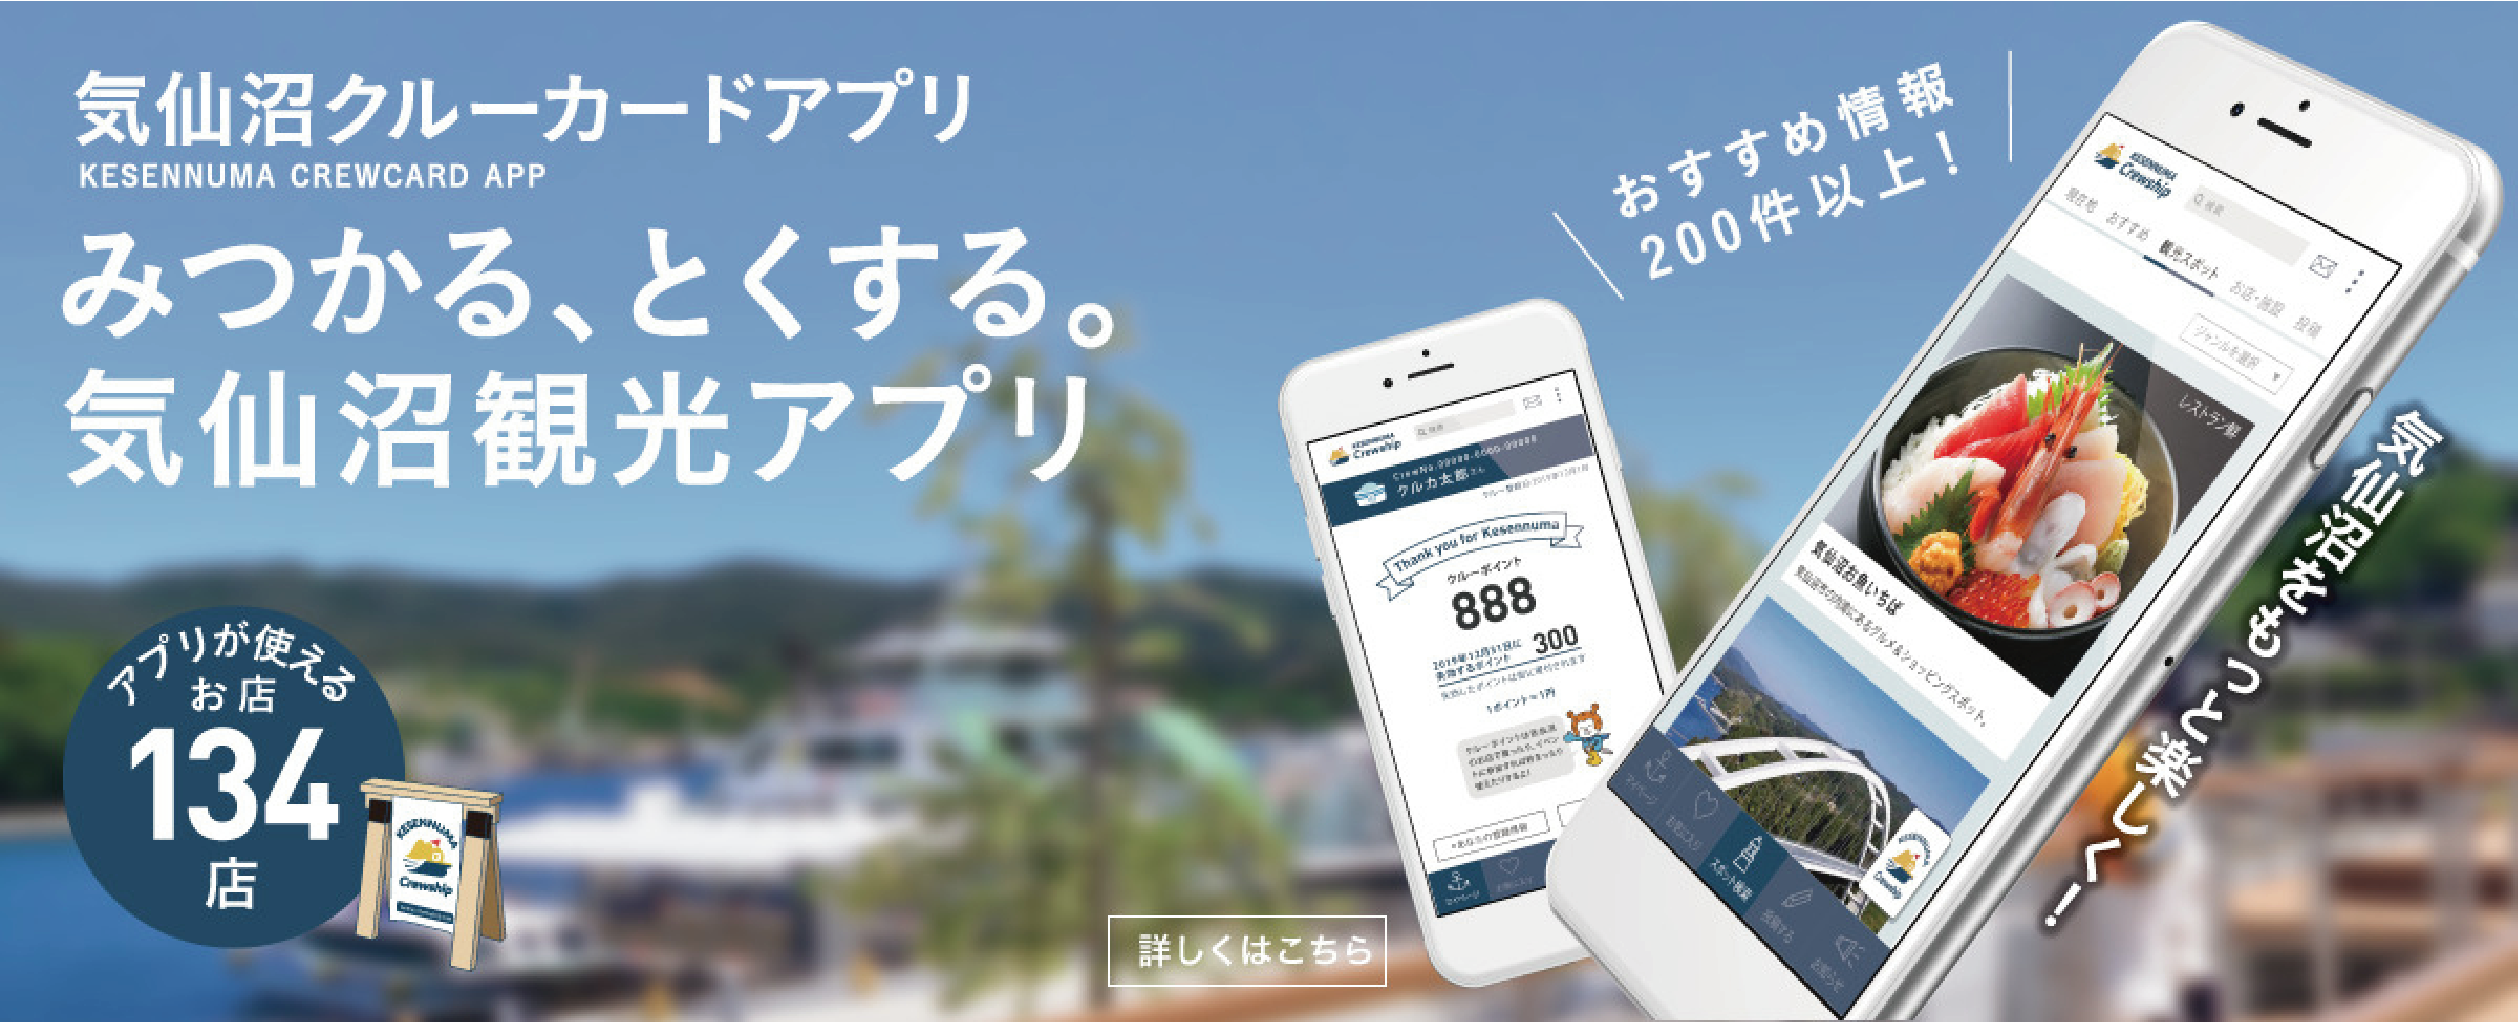 気仙沼クルーカードアプリ KESENNUMA CREWCARD APP みつかる、とくする。気仙沼観光アプリ
          おすすめ情報 200件以上! 詳しくはこちら